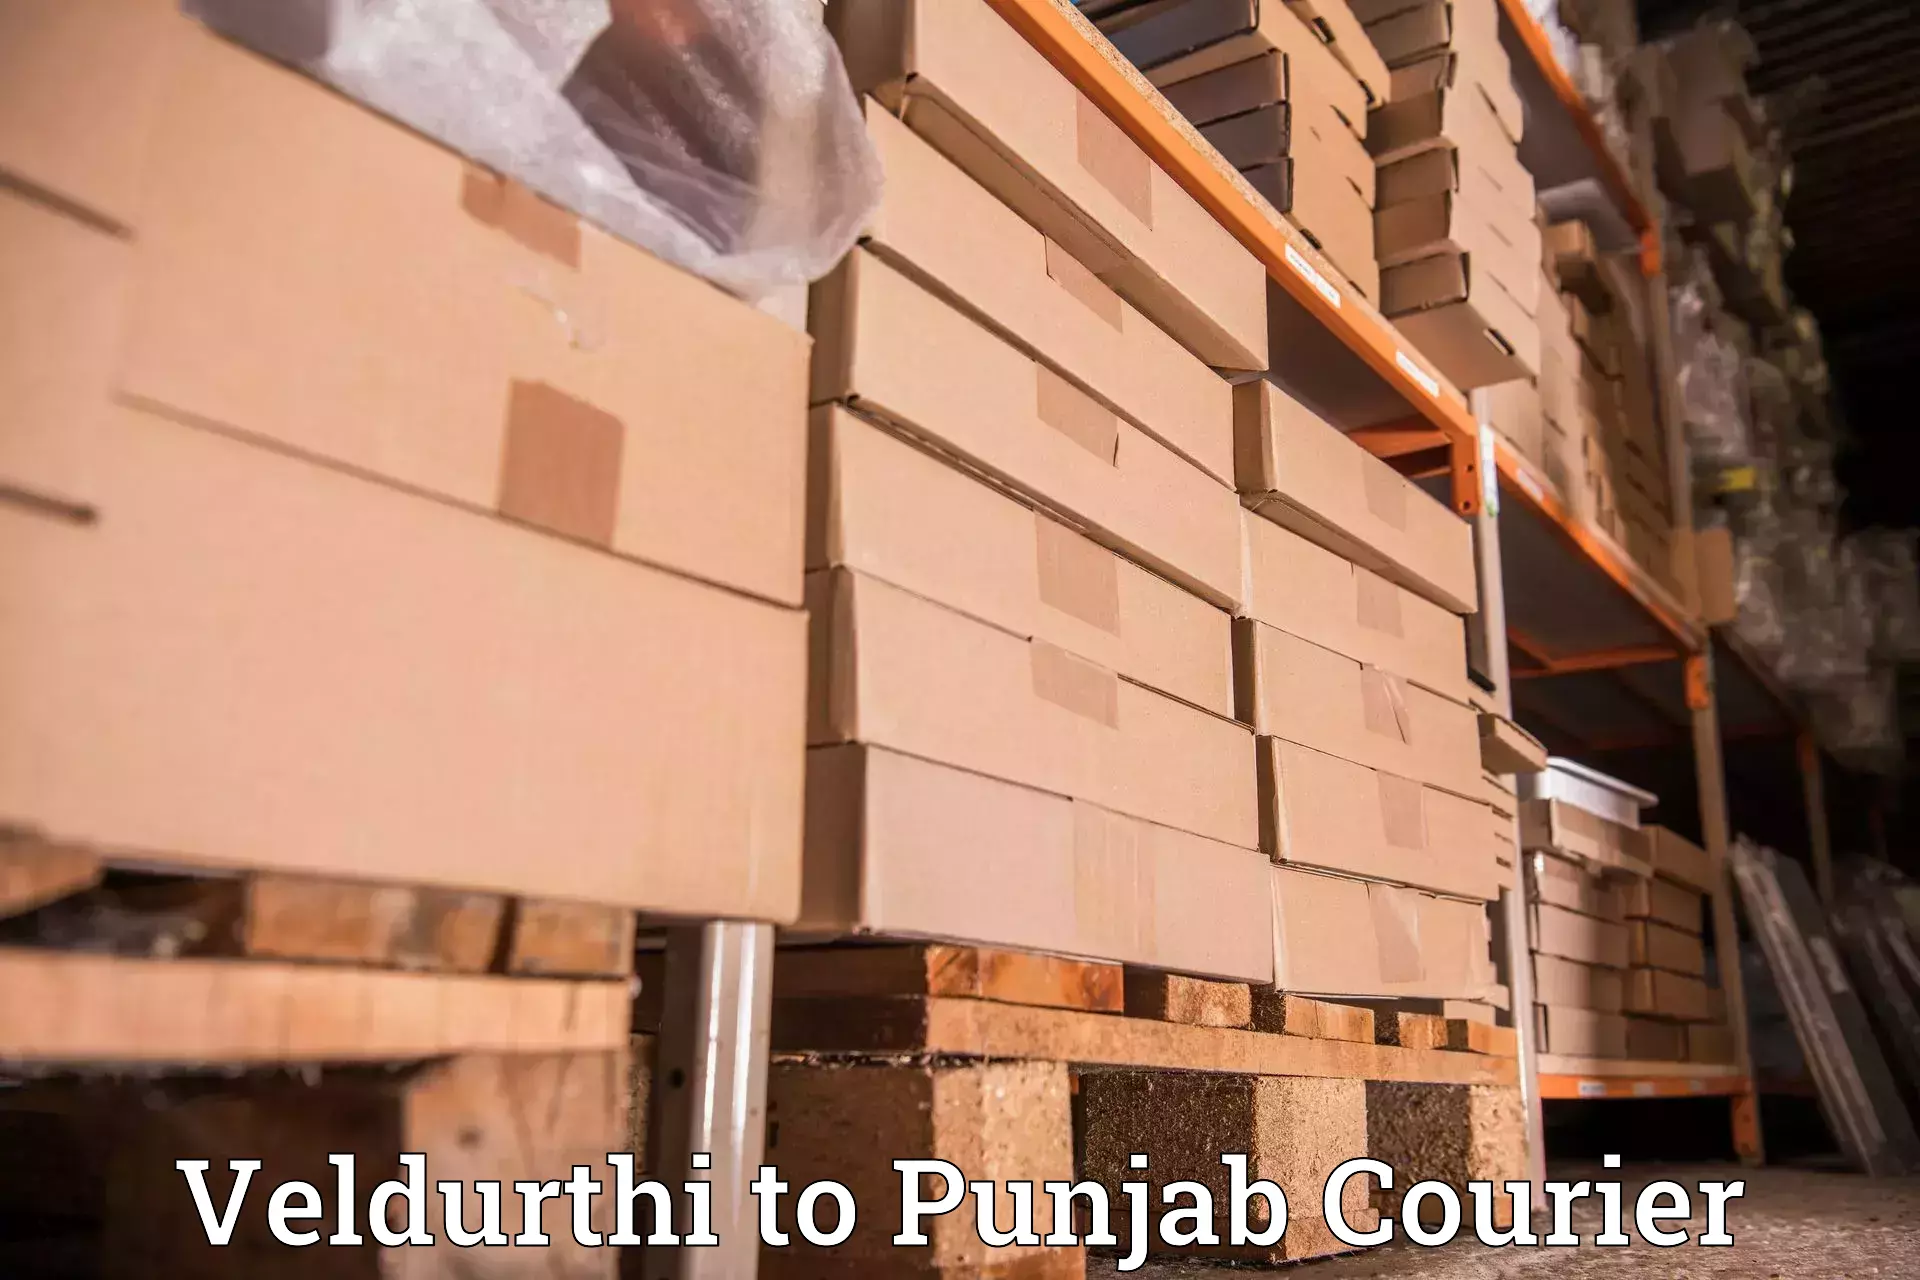 Courier insurance Veldurthi to Punjab